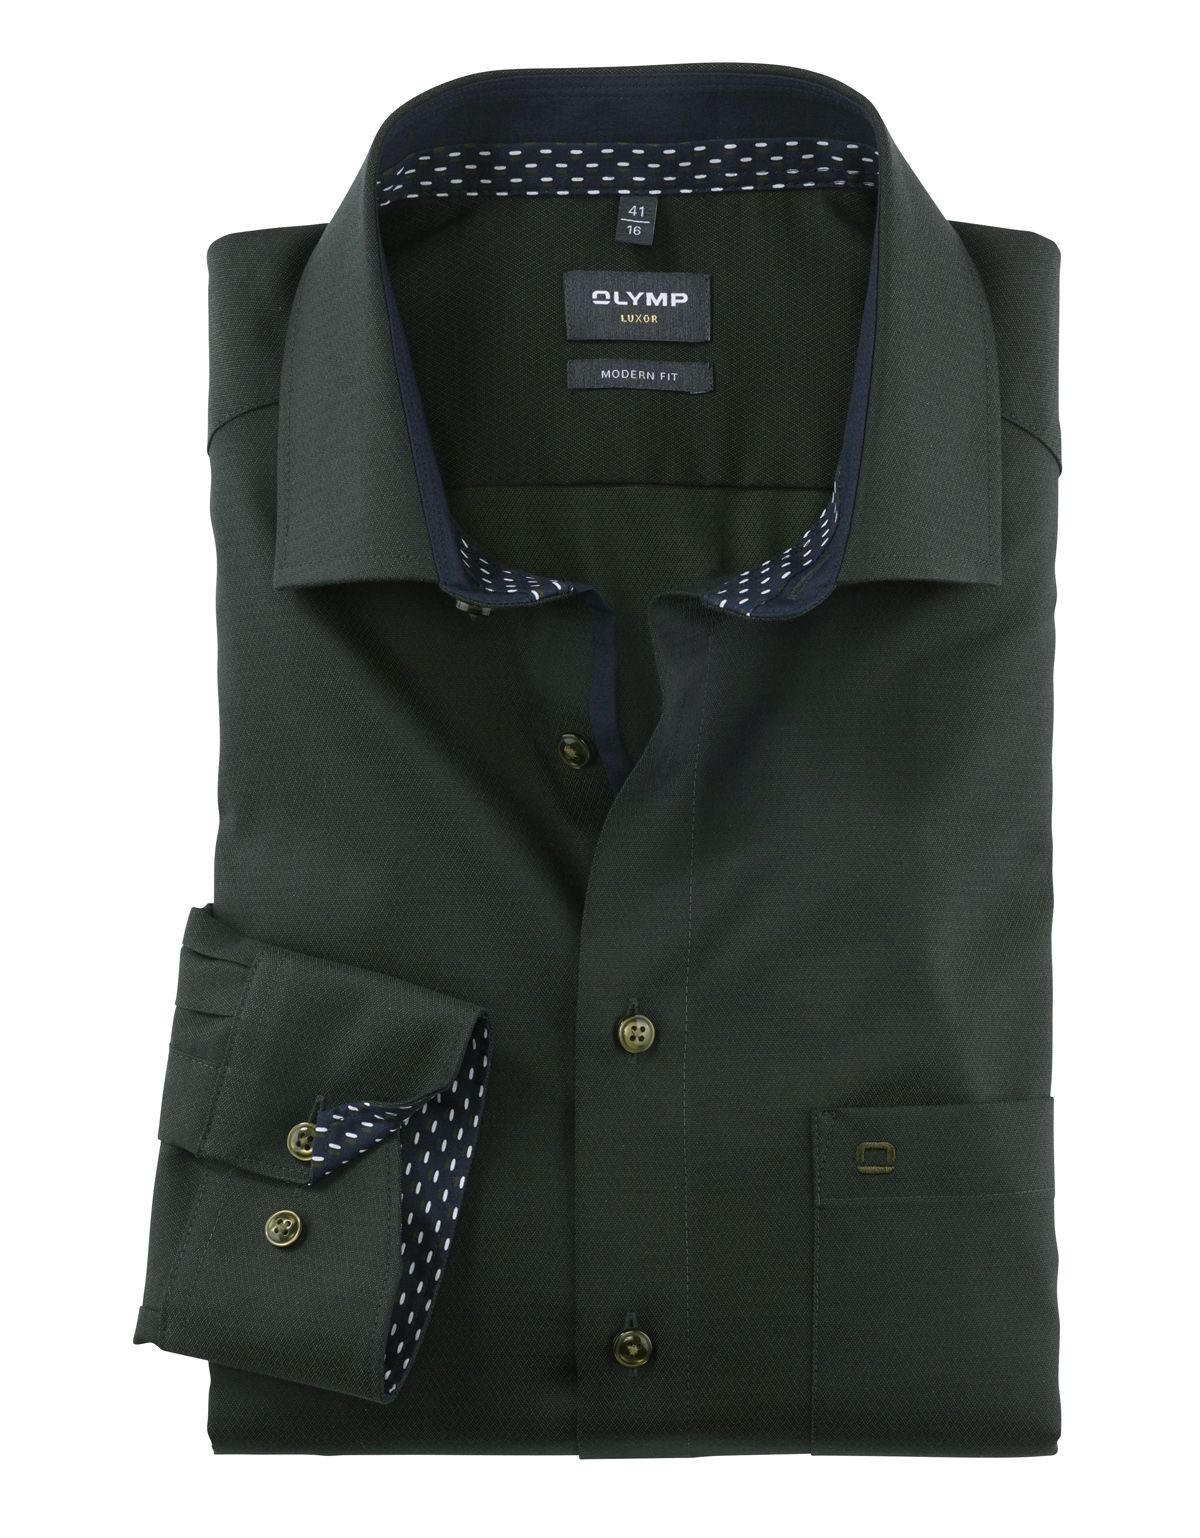 Рубашка мужская OLYMP Luxor, modern fit, фактурная ткань, рост выше 186[ЗЕЛЁНЫЙ]